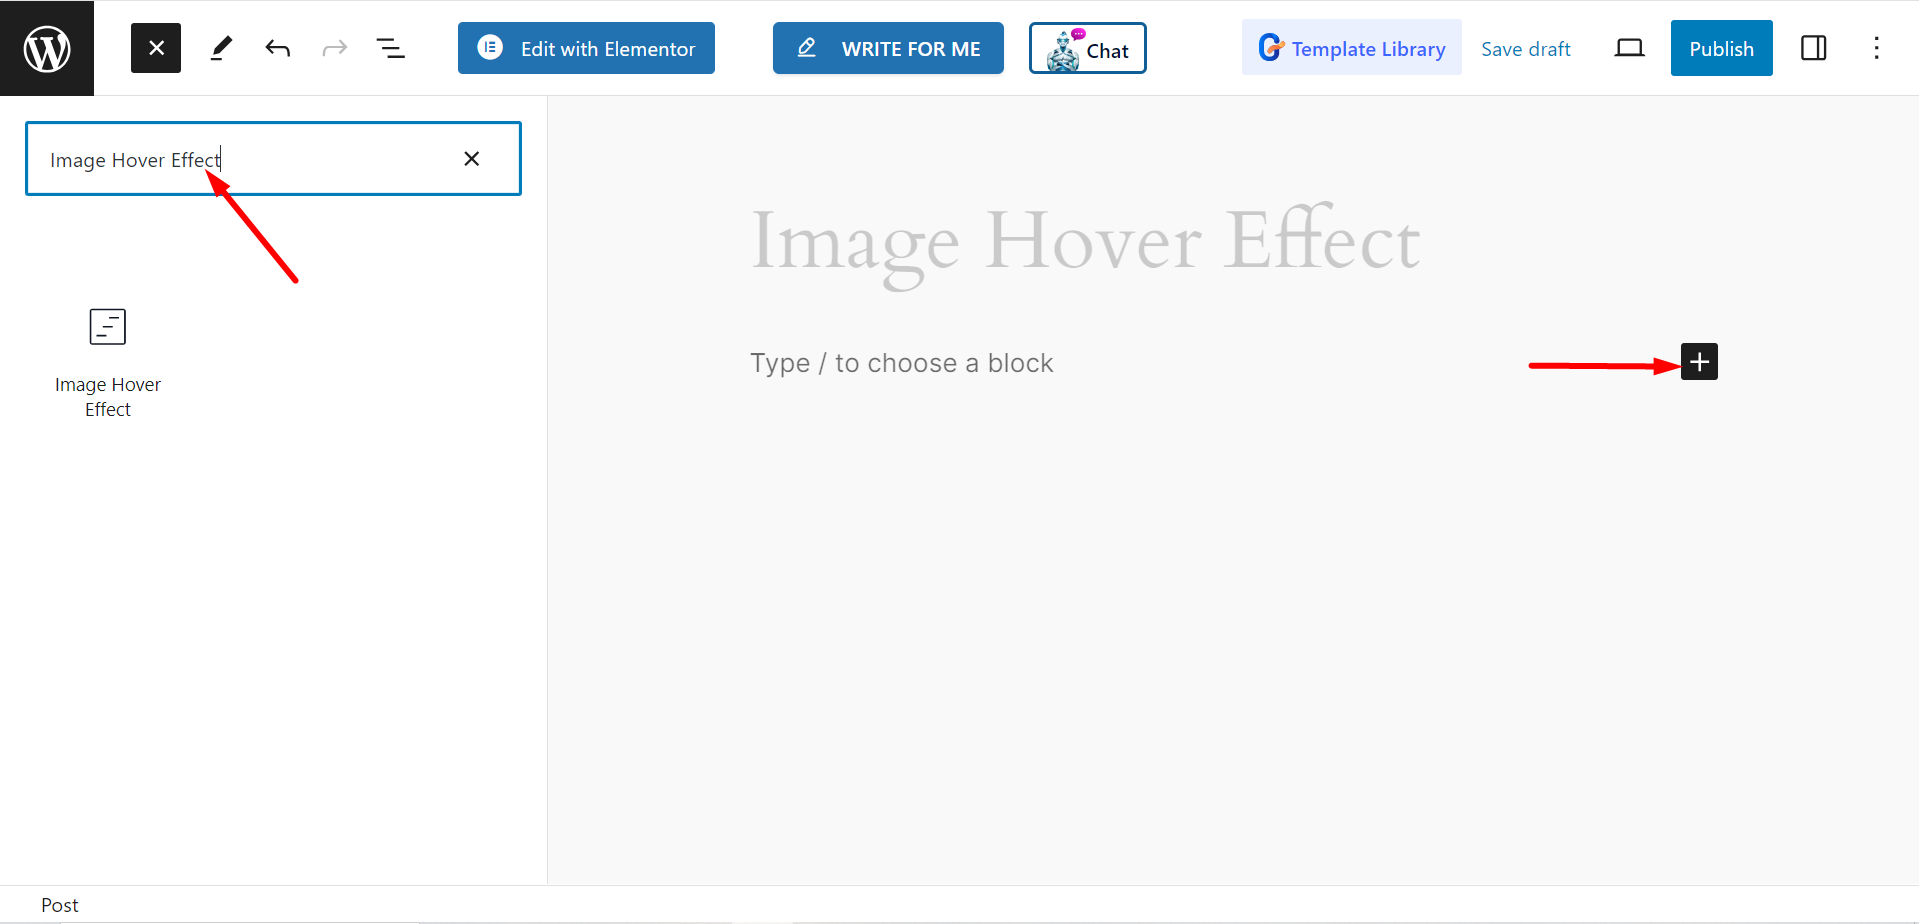 Drag GutenKit Image Hover Effect block